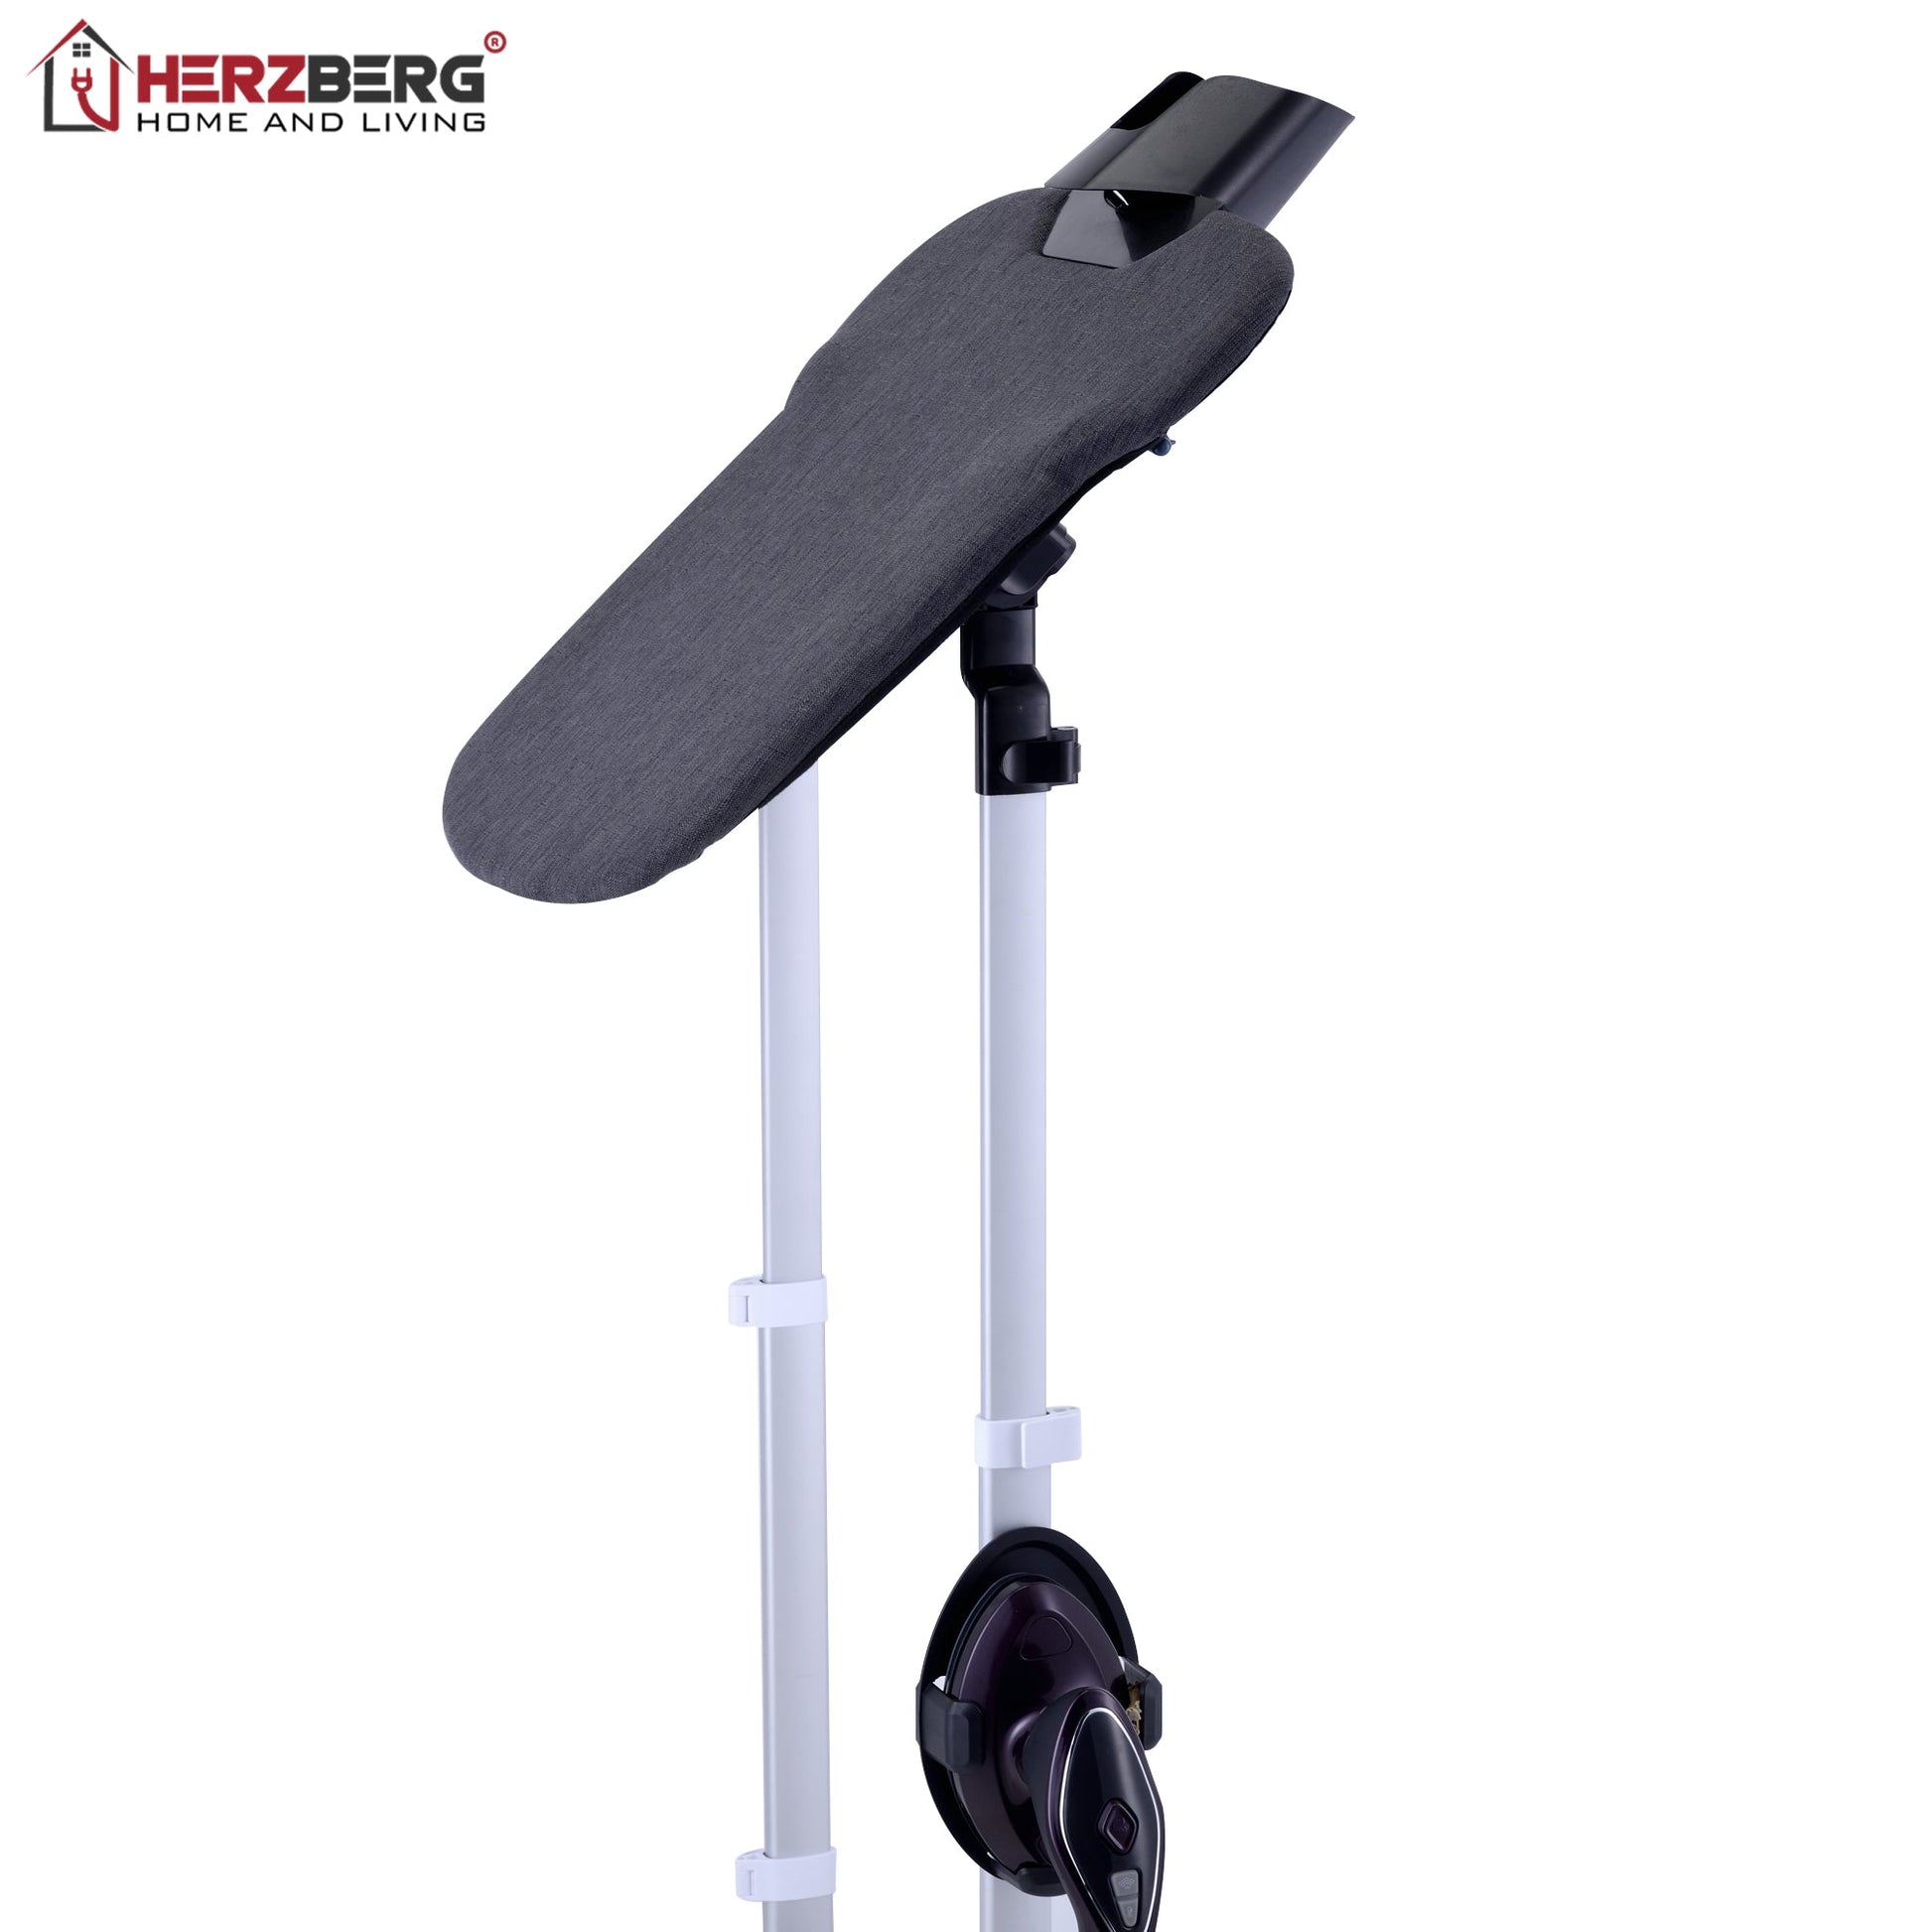 Herzberg HG-8058: geavanceerde kledingstomer met strijkstation - Bivakshop